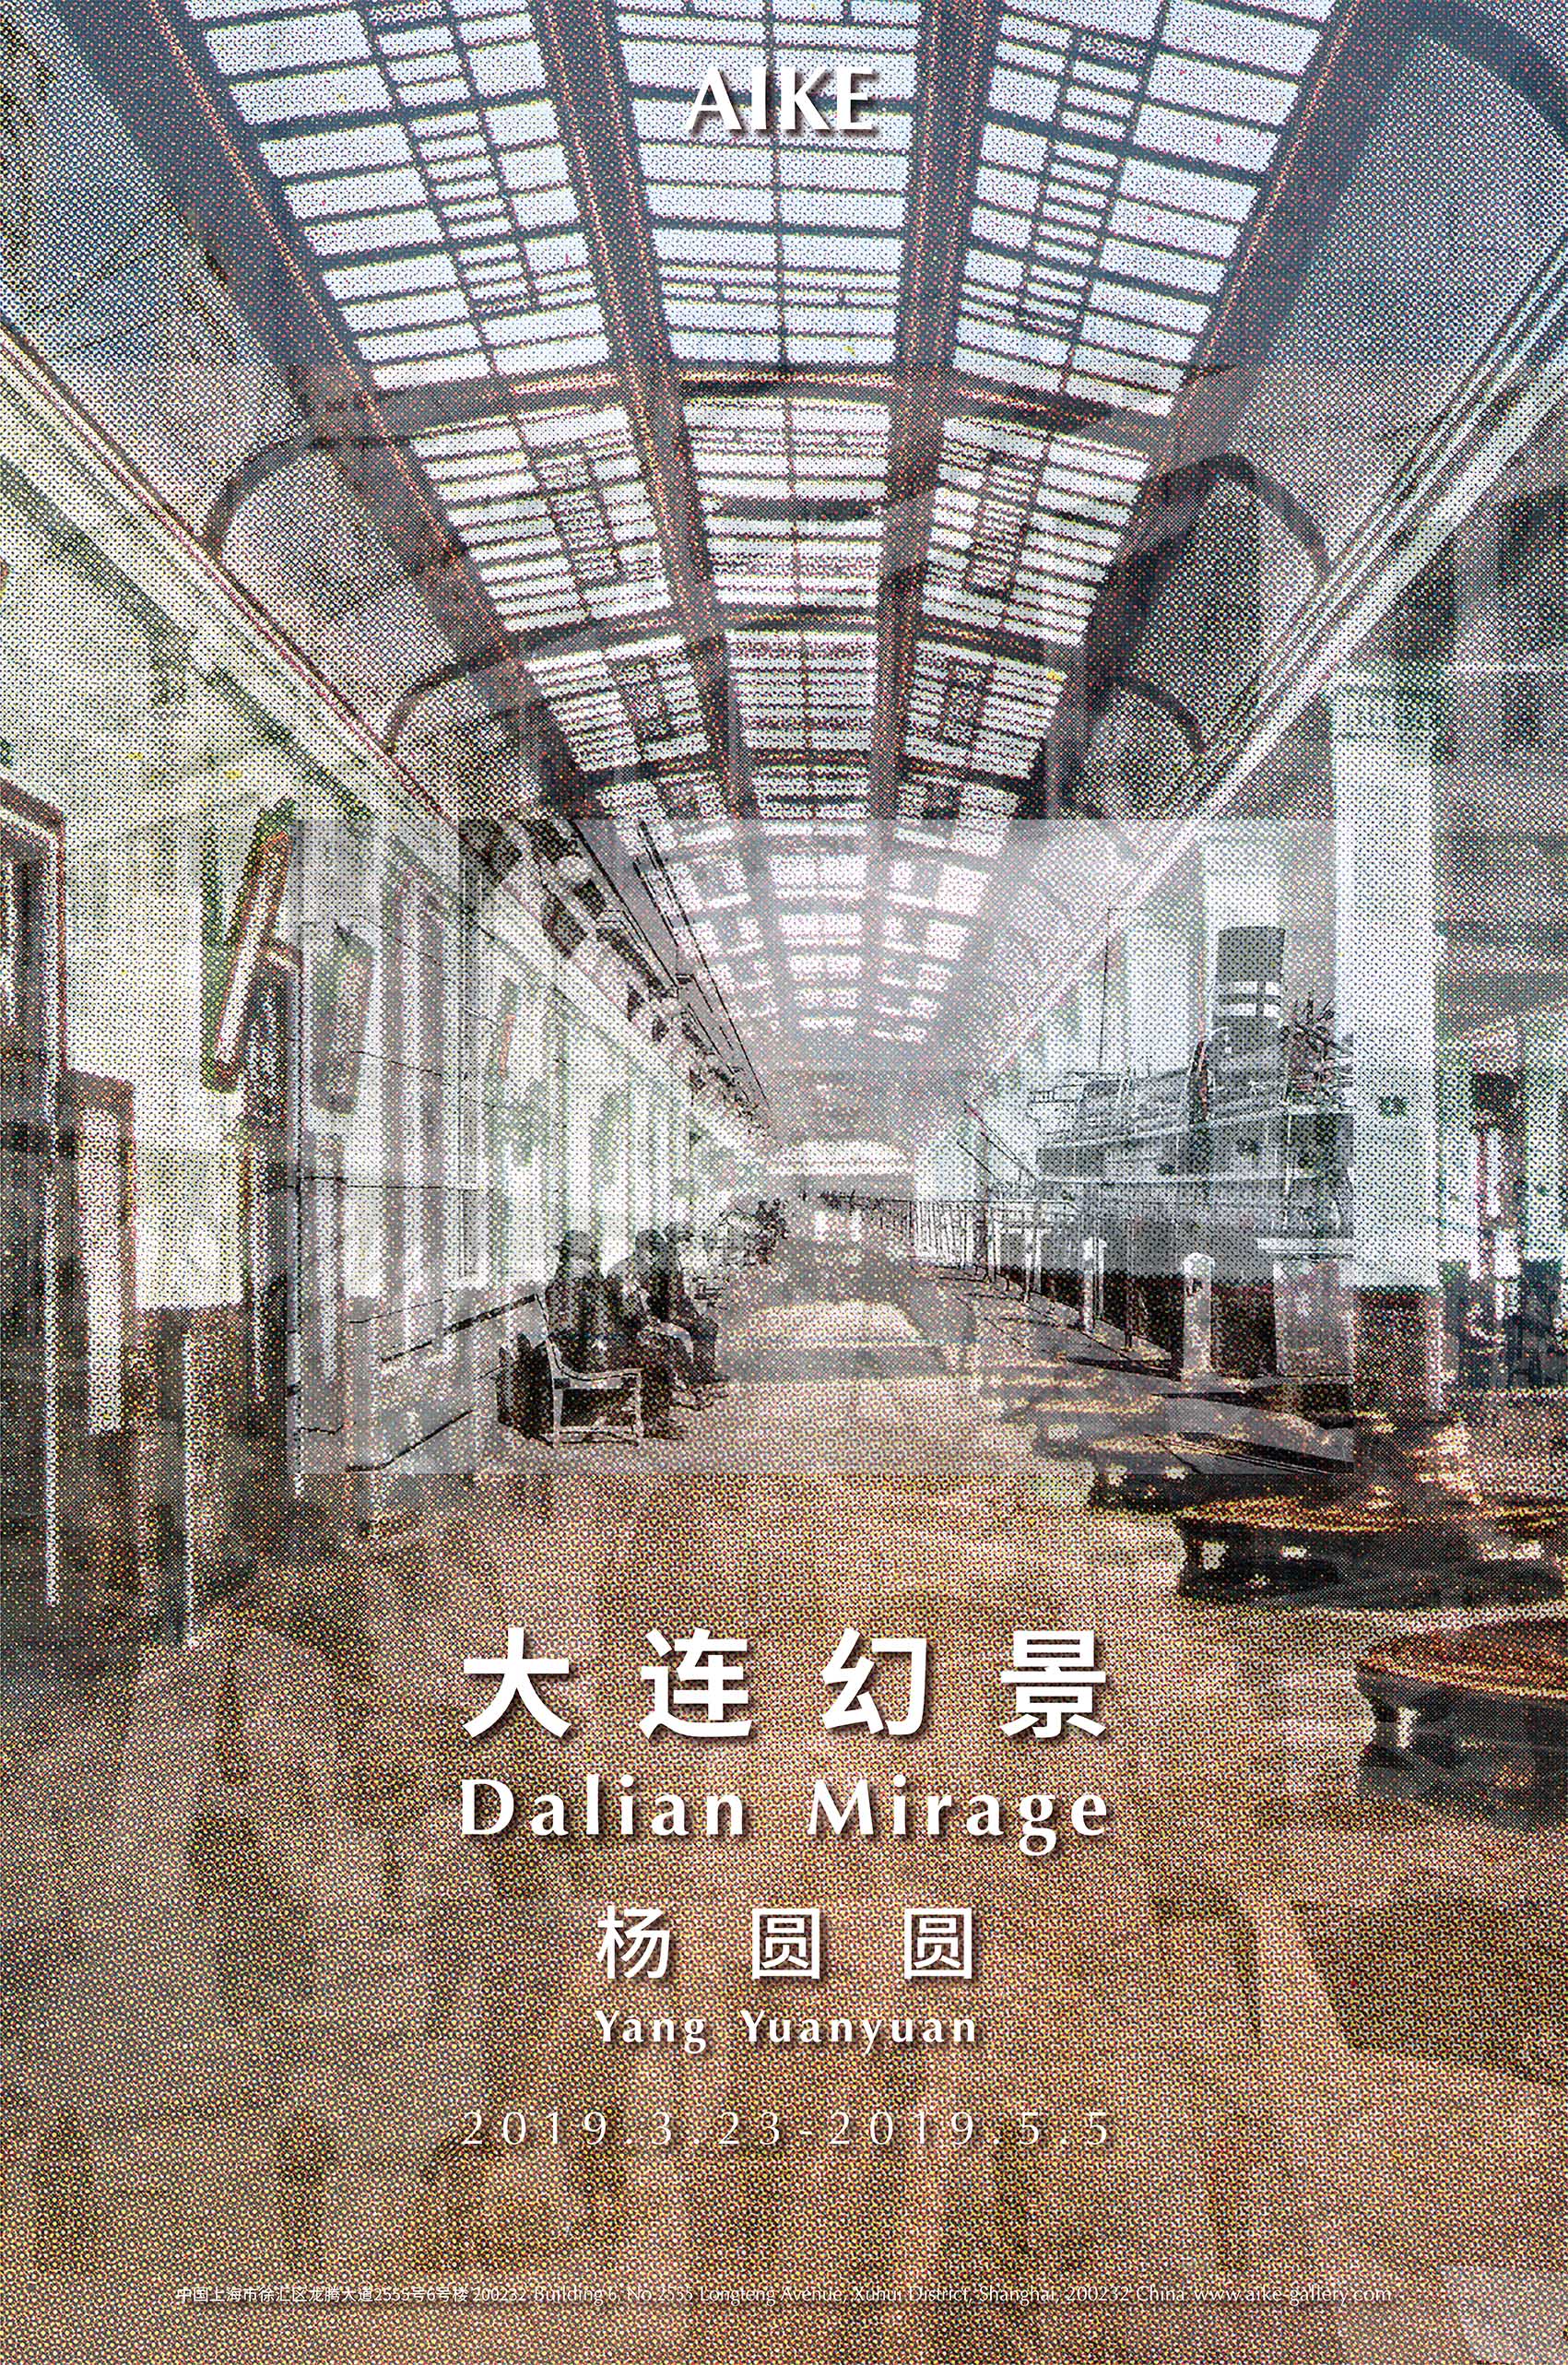 Aike Shanghai - Yang Yuanyuan - Dalian Mirage